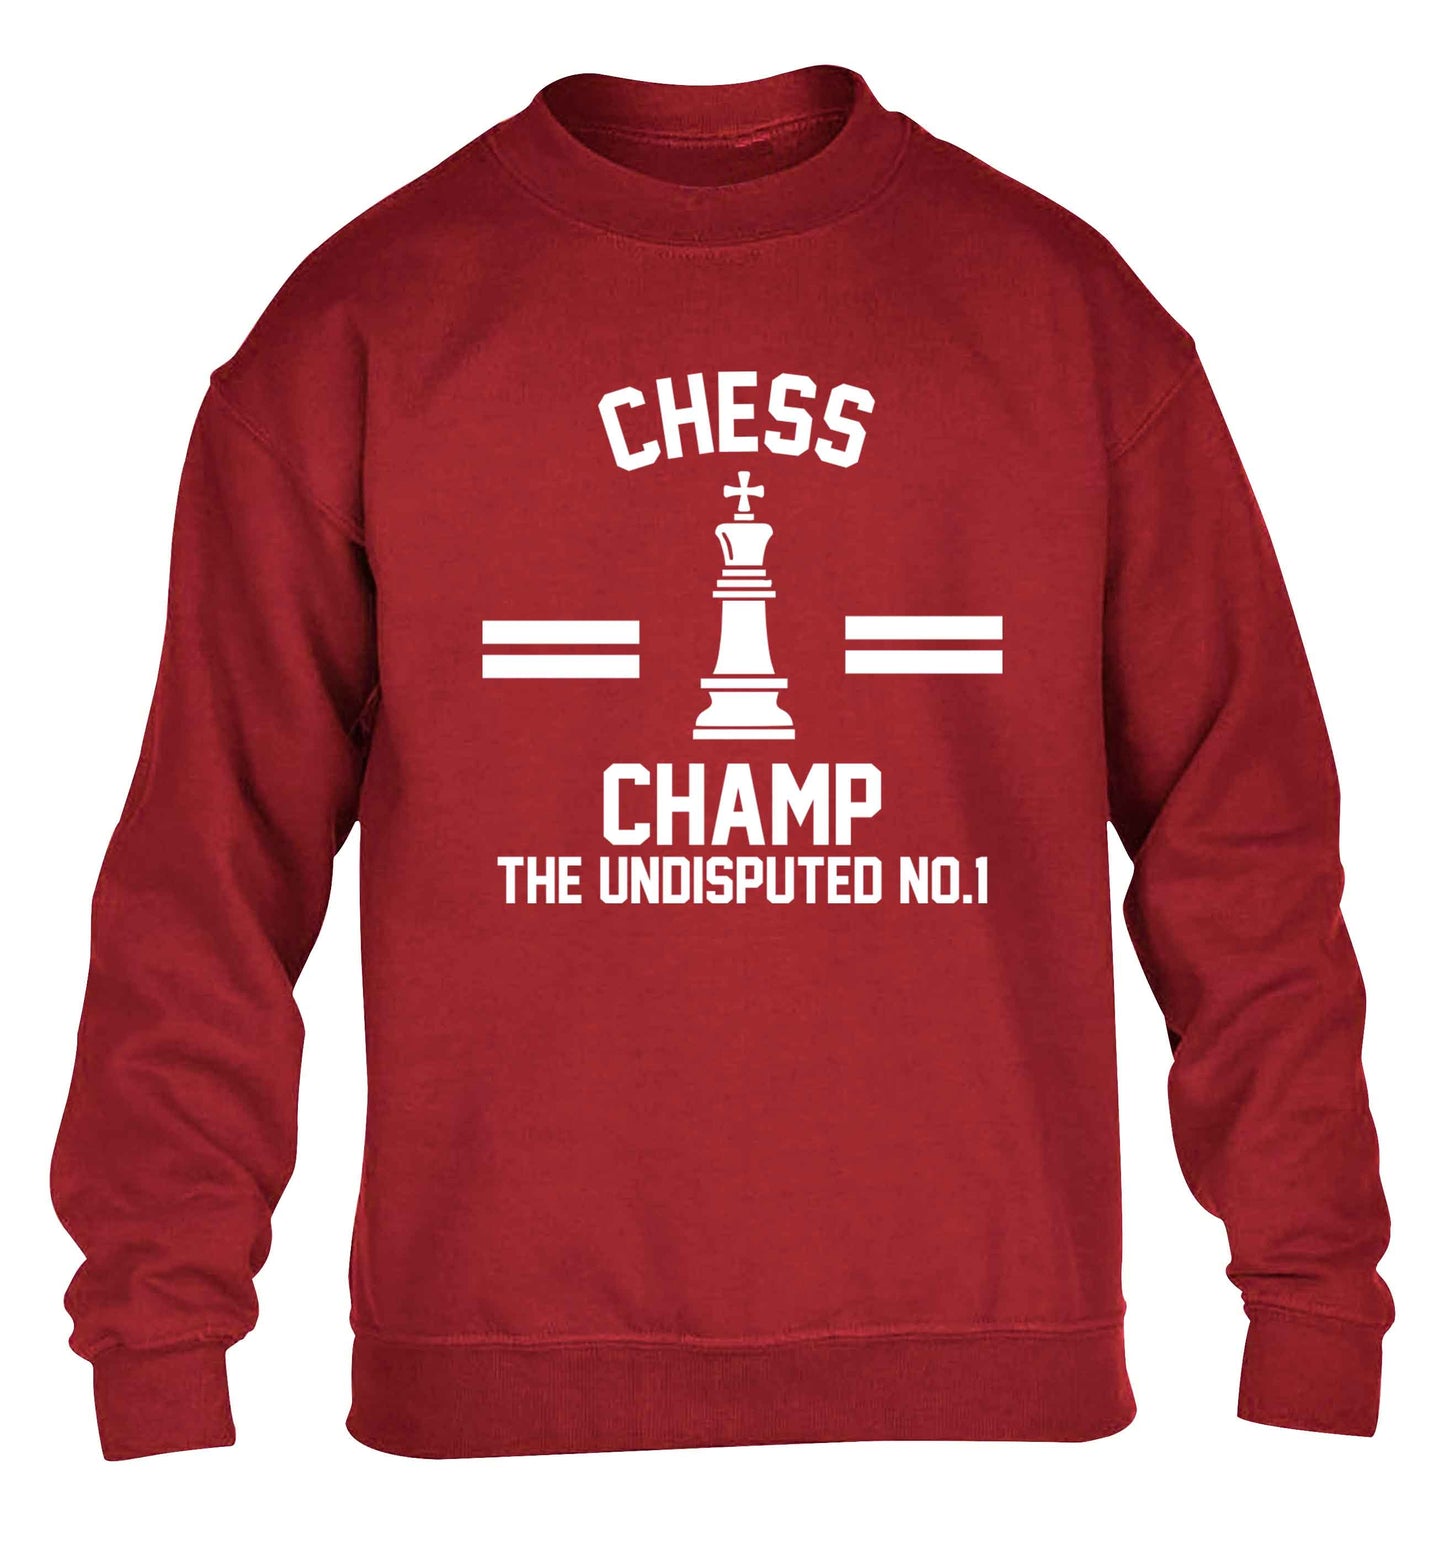 Undisputed chess championship no.1  children's grey sweater 12-13 Years